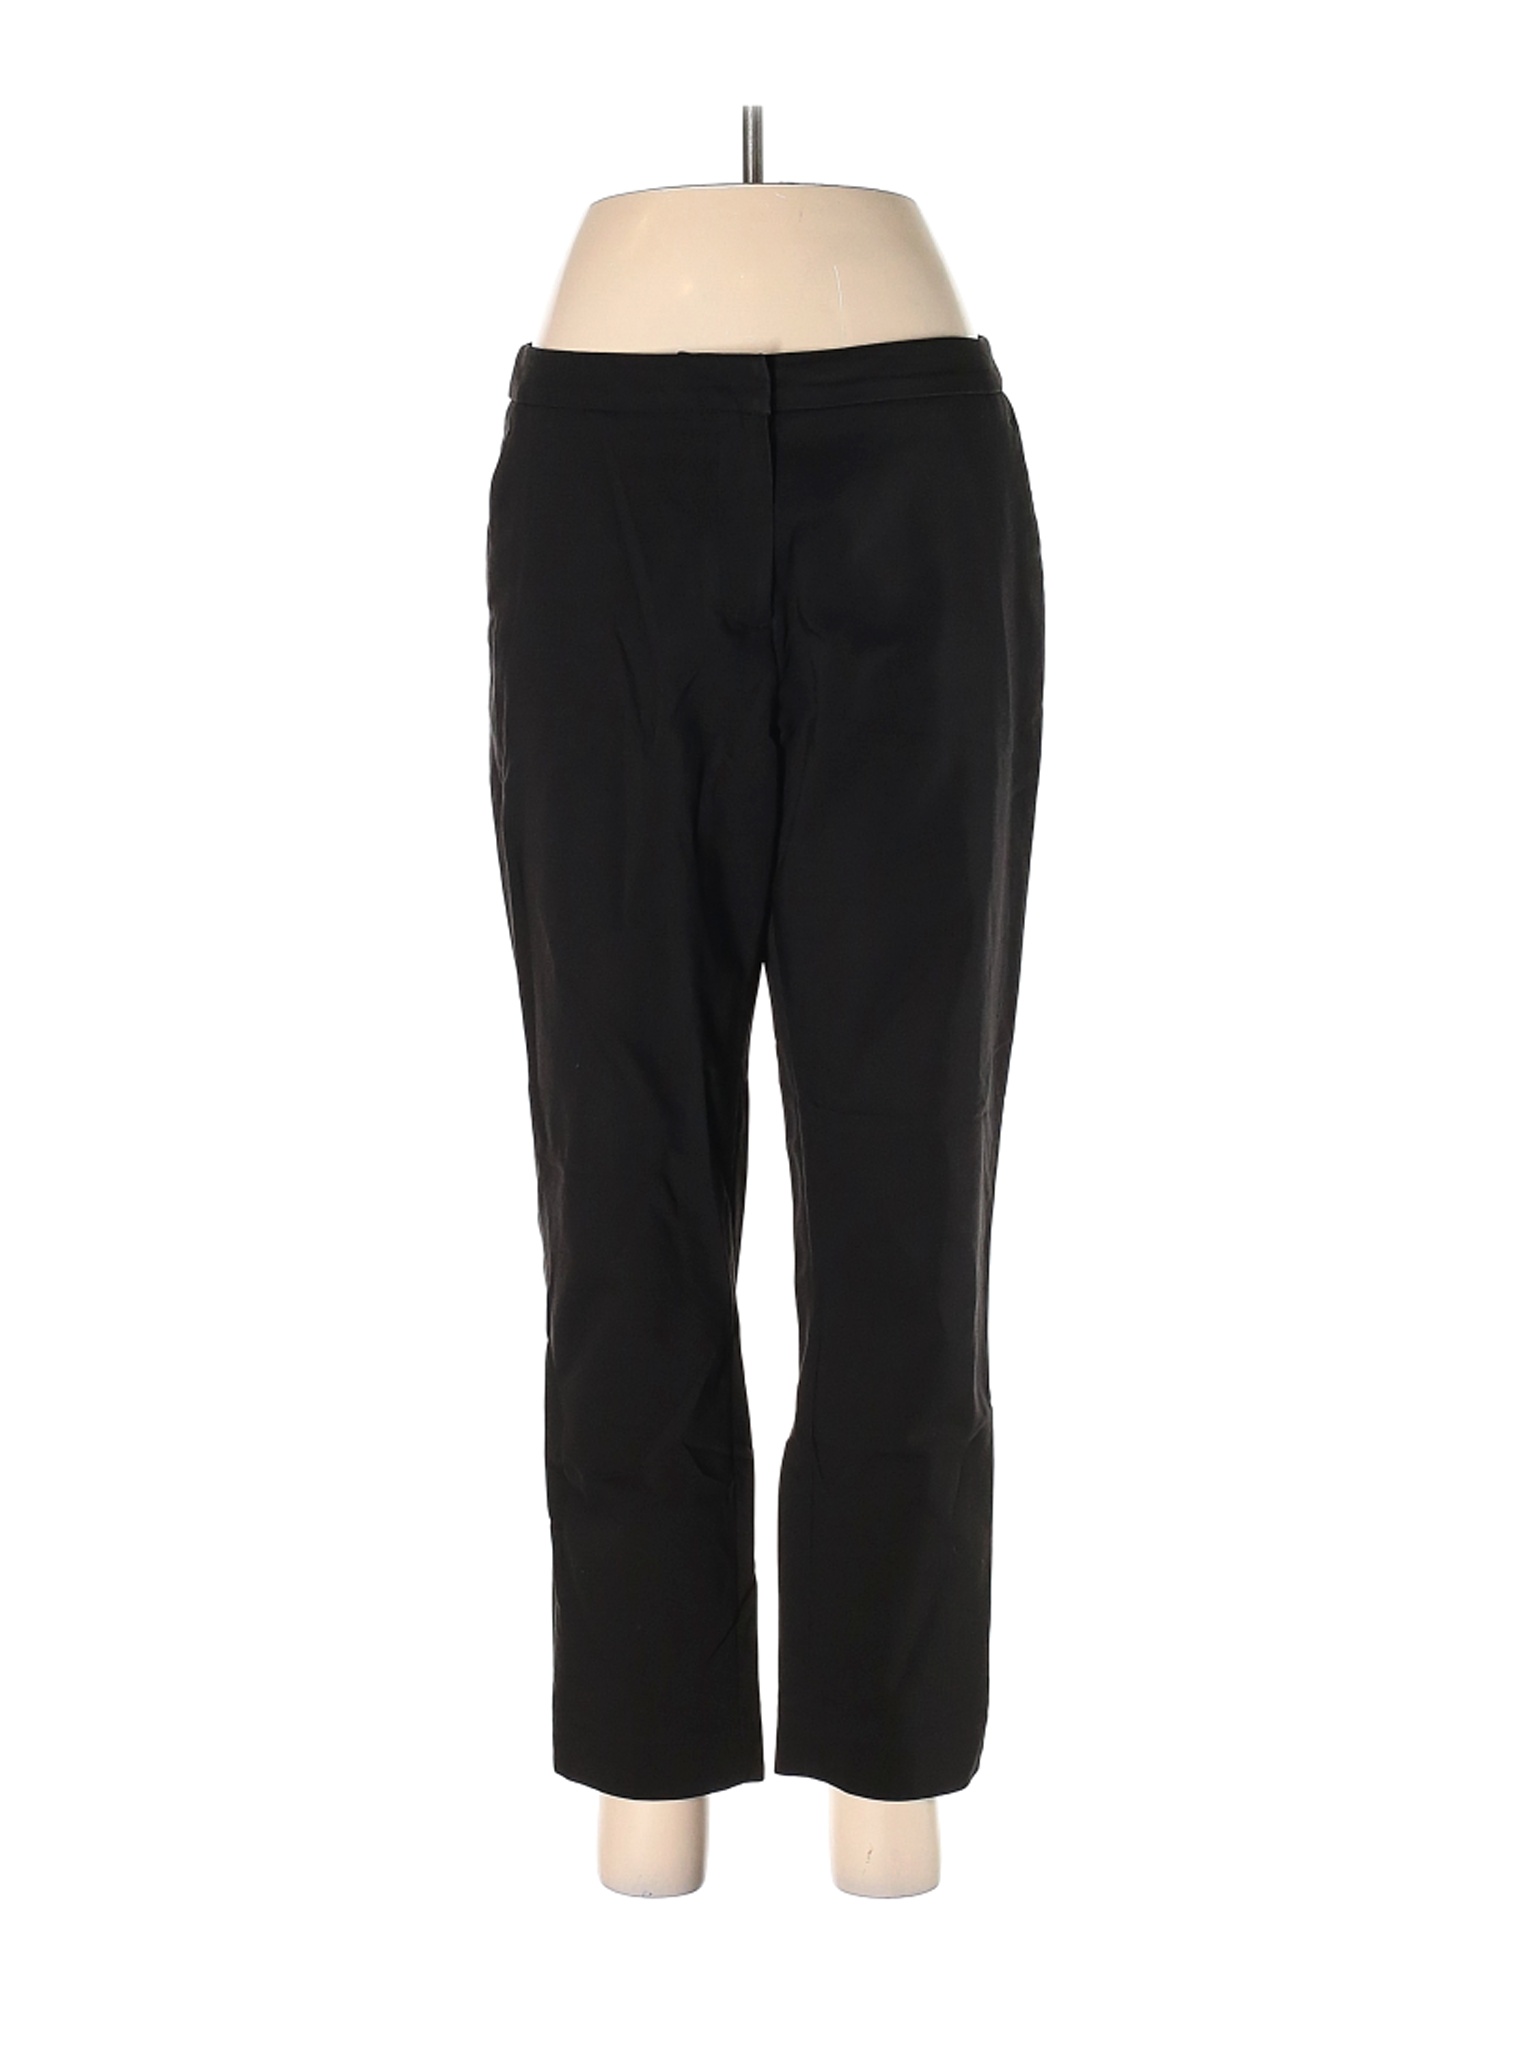 H&M Women Black Dress Pants 8 | eBay